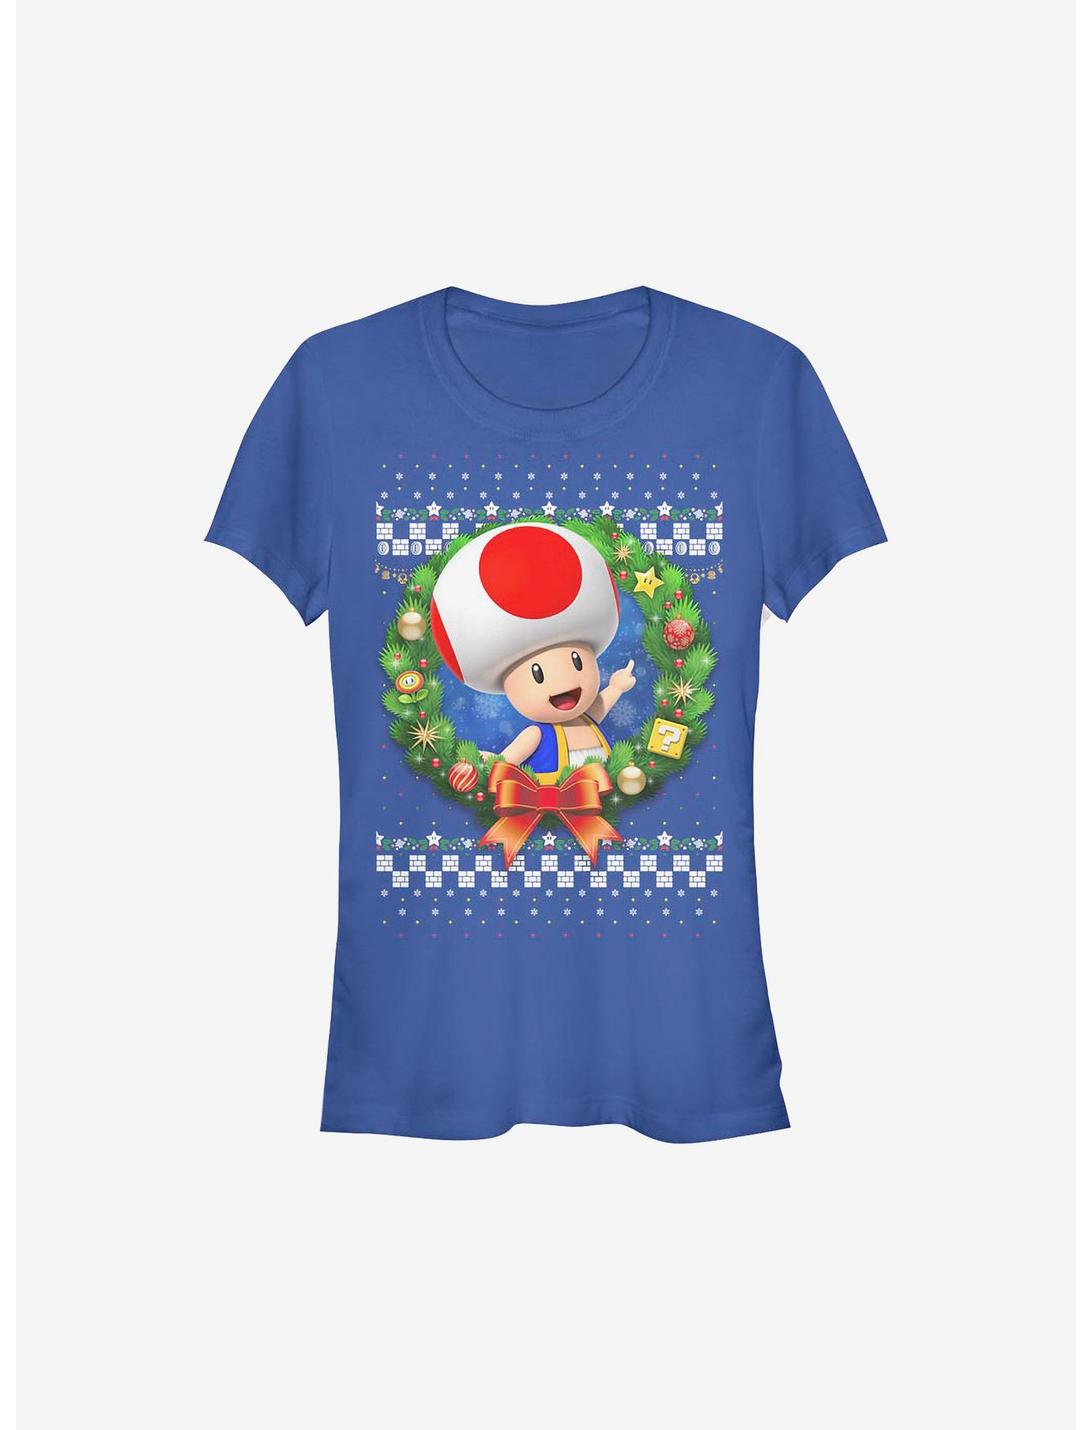 Super Mario Toad Wreath Holiday Girls T-Shirt, ROYAL, hi-res